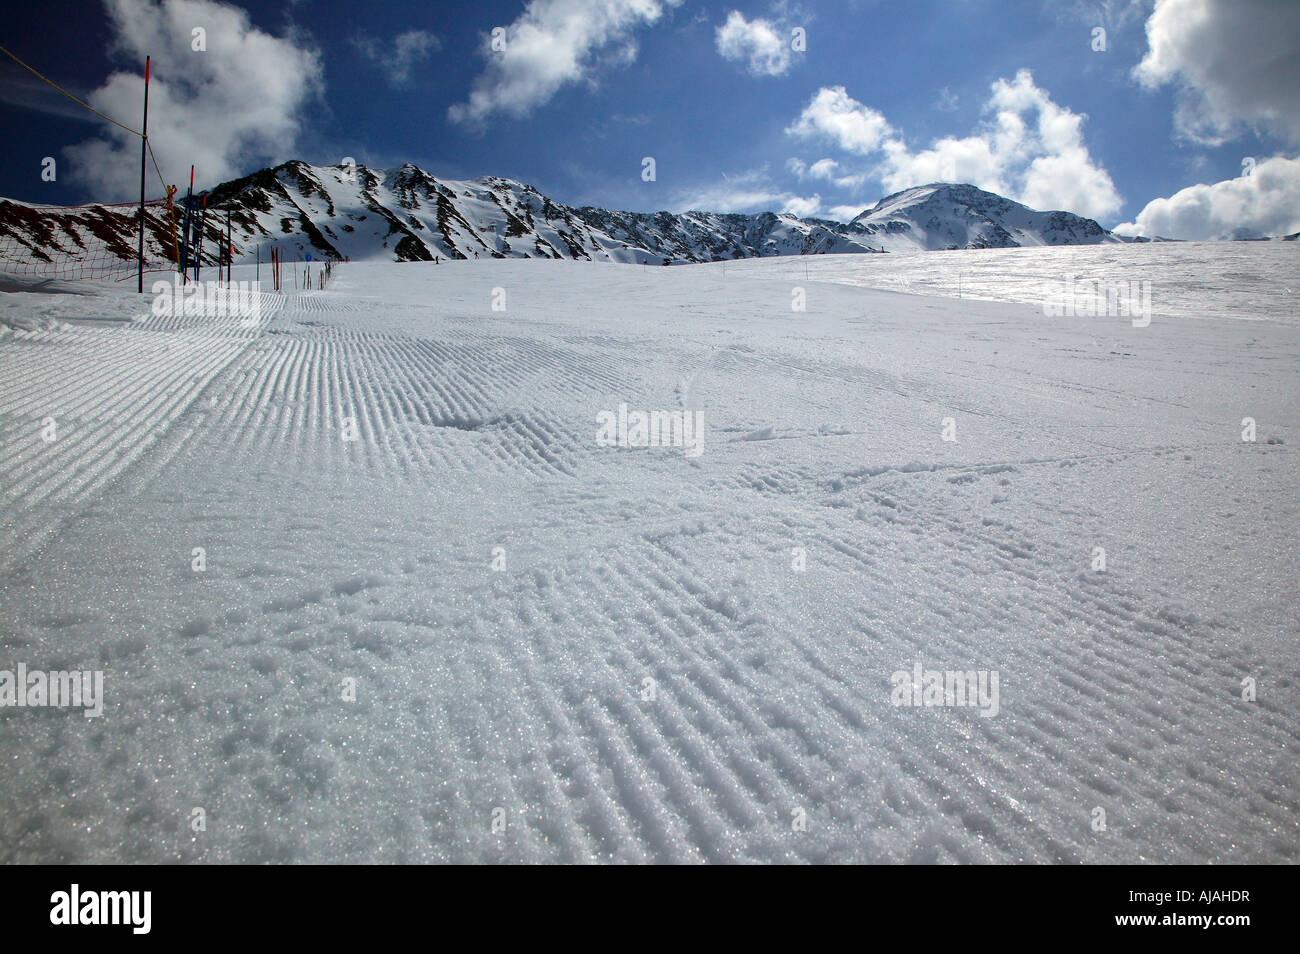 Un matin à la piste déserte de ski de La Tour, dans la vallée de Chamonix, France Banque D'Images